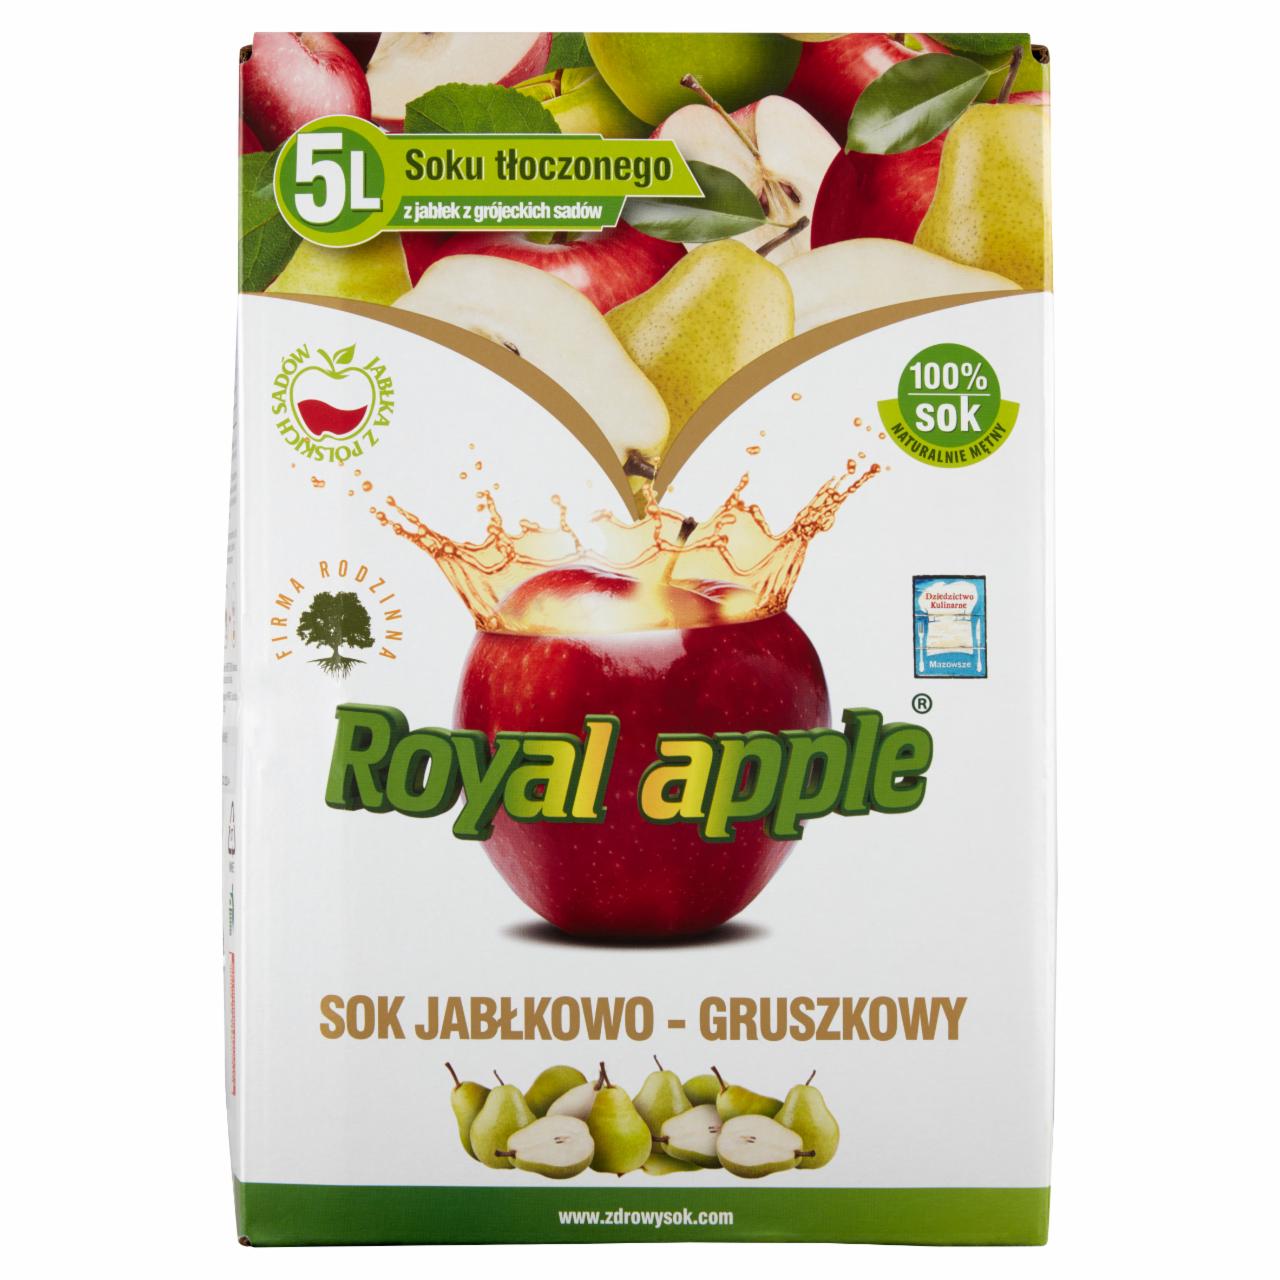 Zdjęcia - Royal apple Sok jabłkowo-gruszkowy 5 l